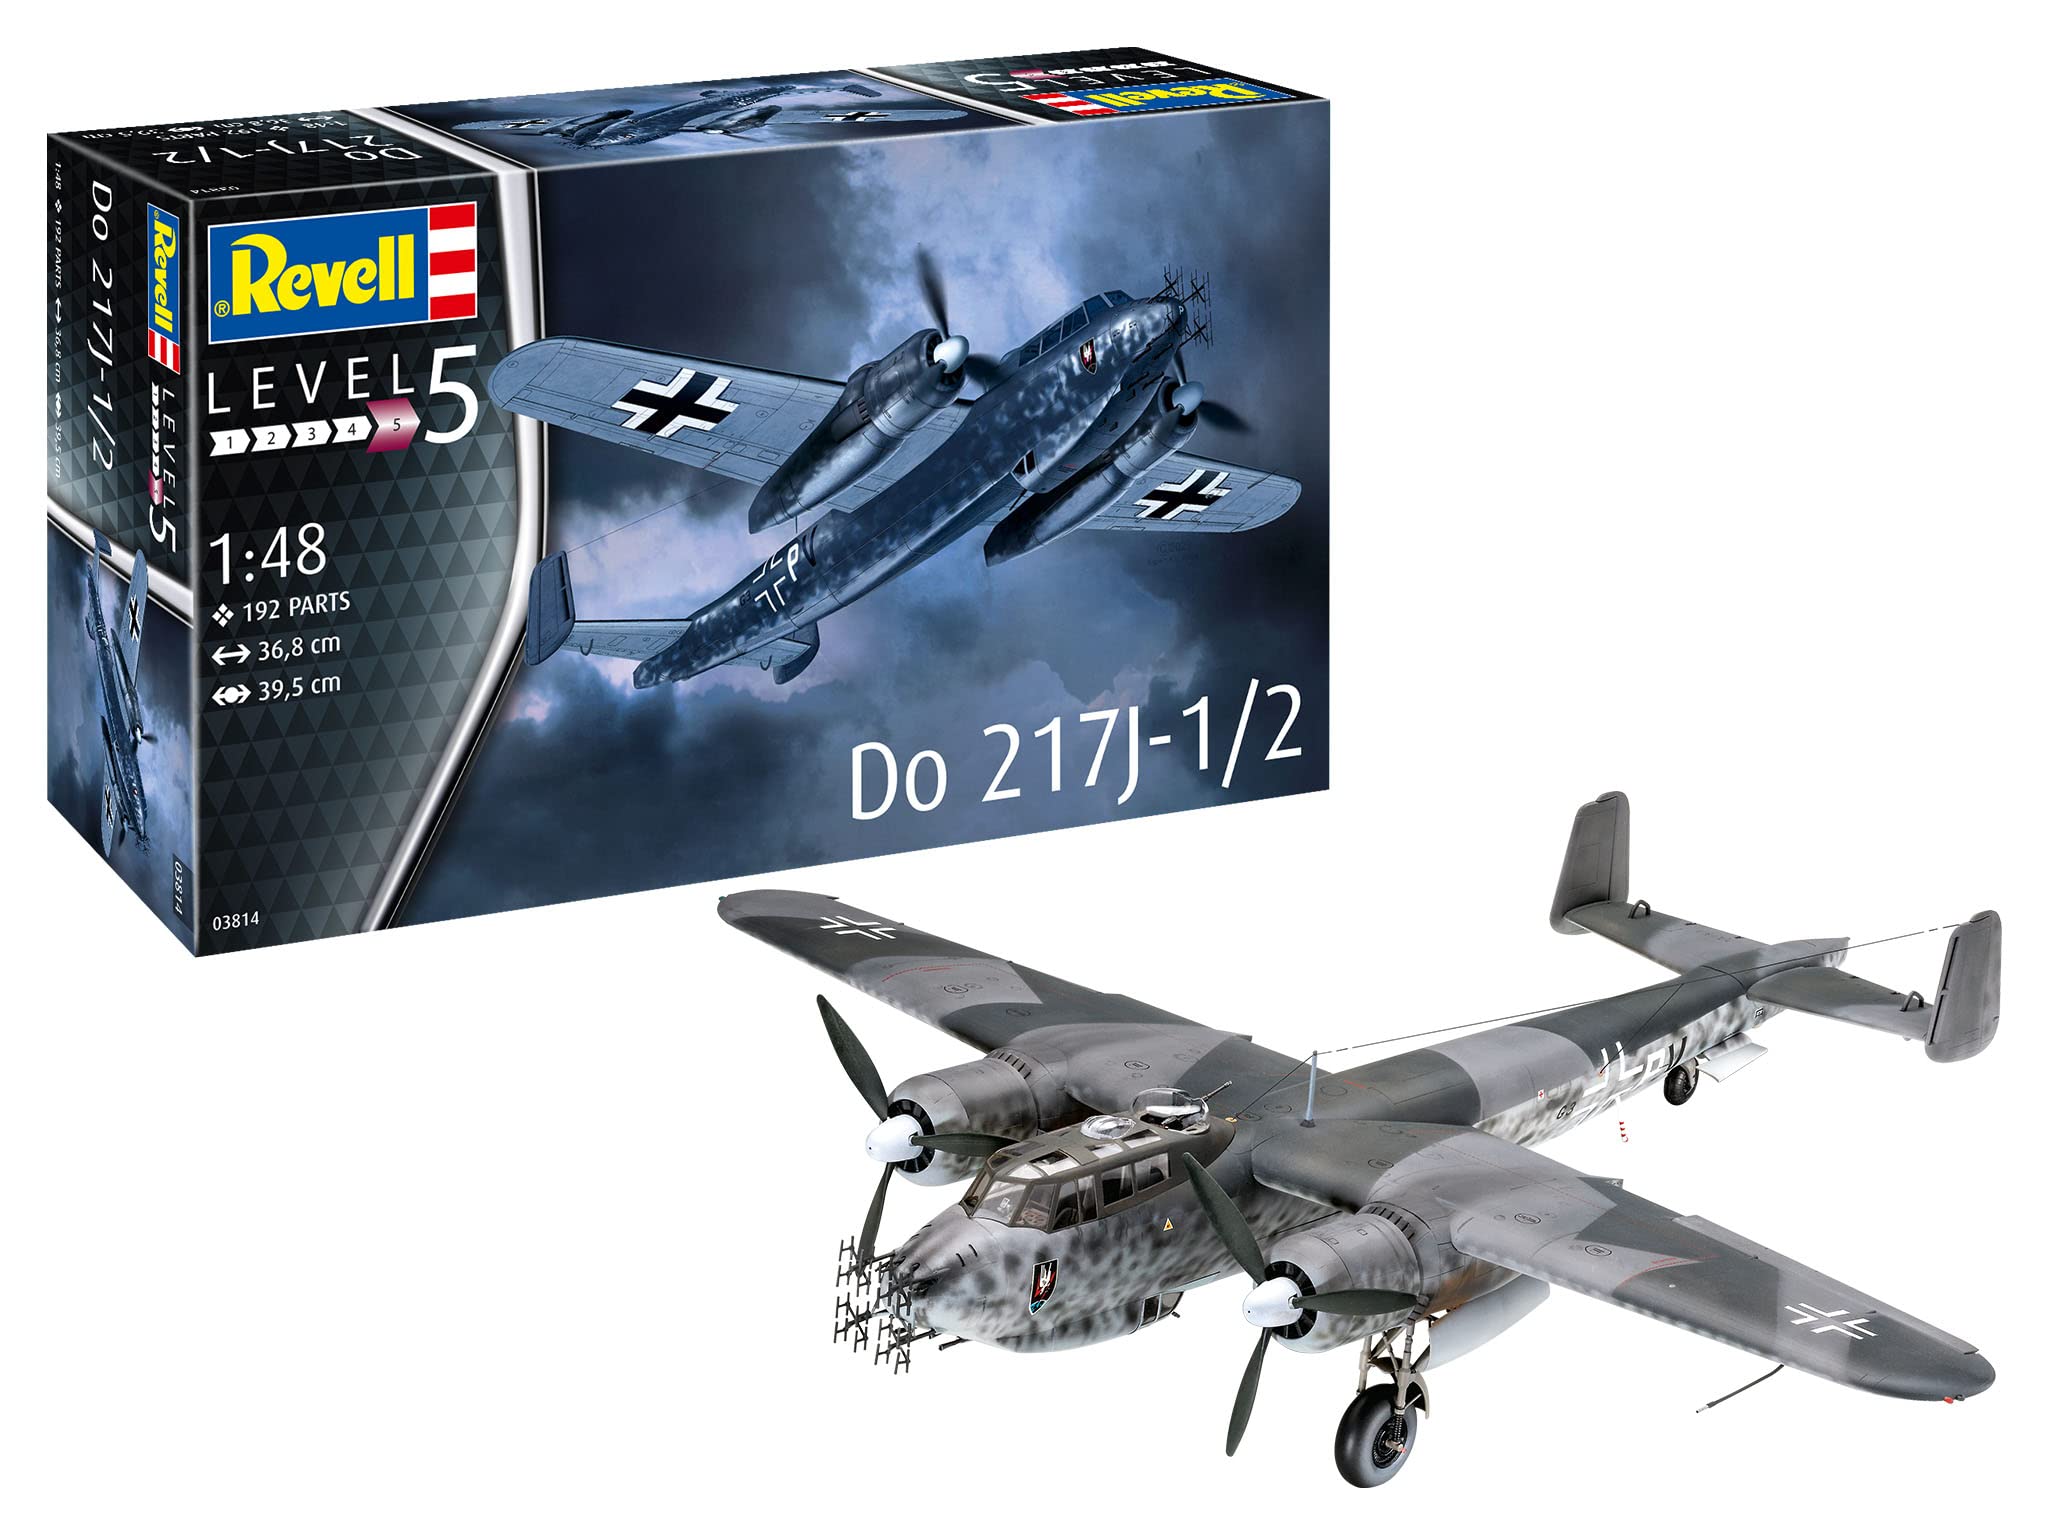 Revell 03814 1/48 Scale Dornier Do217 J1/J2 German WW2 Nigh Fighter Model Kit - [Sunshine-Coast] - Revell - [RC-Car] - [Scale-Model]